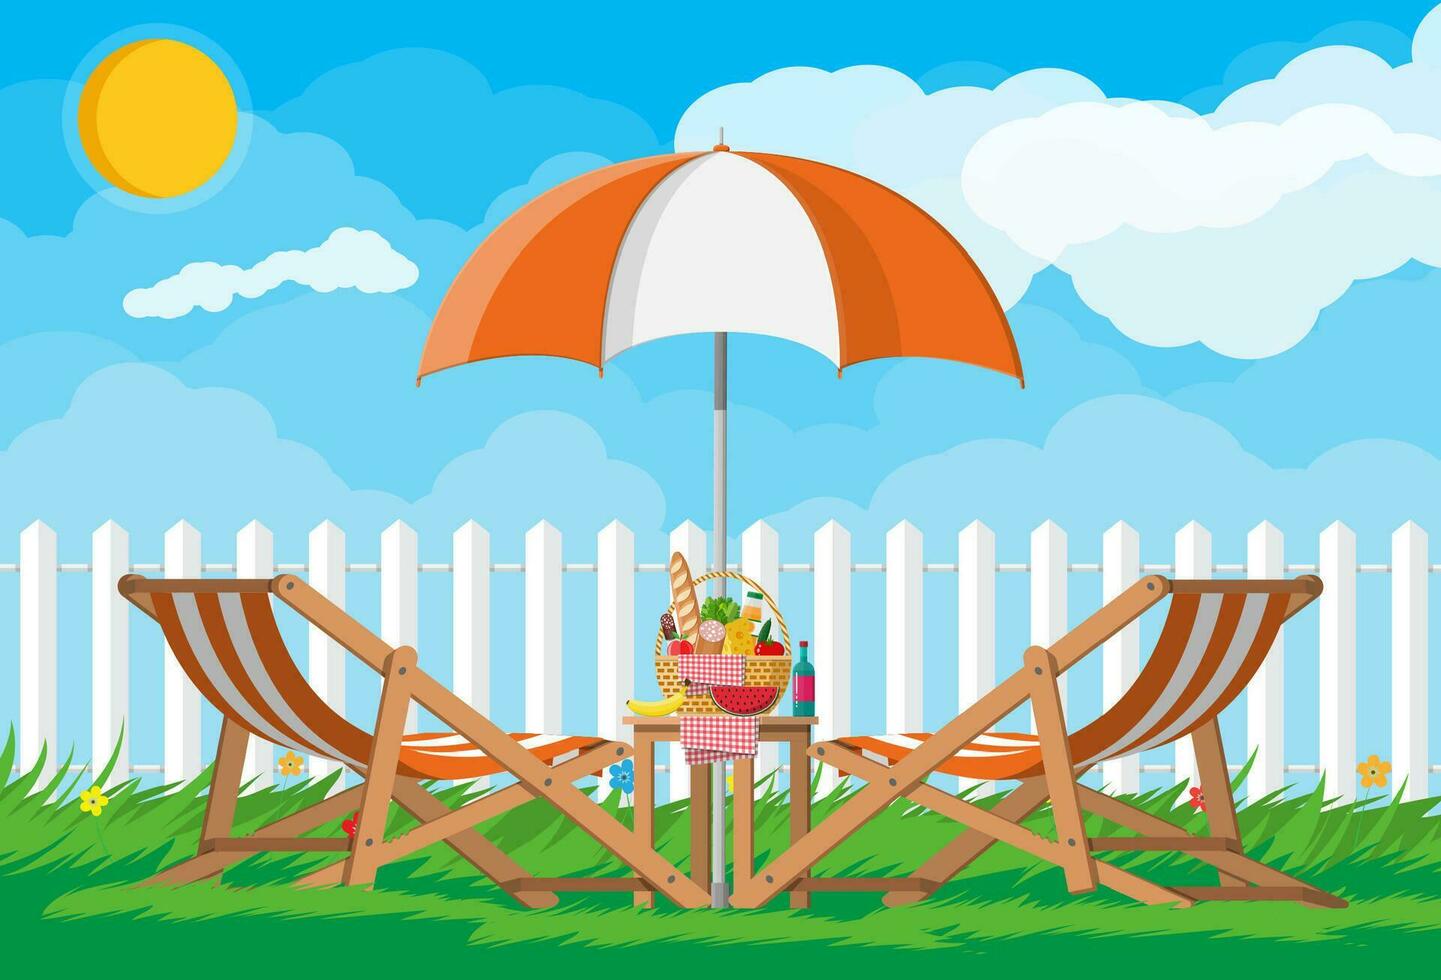 Sol solstol, paraply, tabell med korg- picknick korg full av Produkter, vin, korv, bacon och ost, äpple, tomat, gurka, sallad juice. picknick i natur. vektor illustration i platt stil